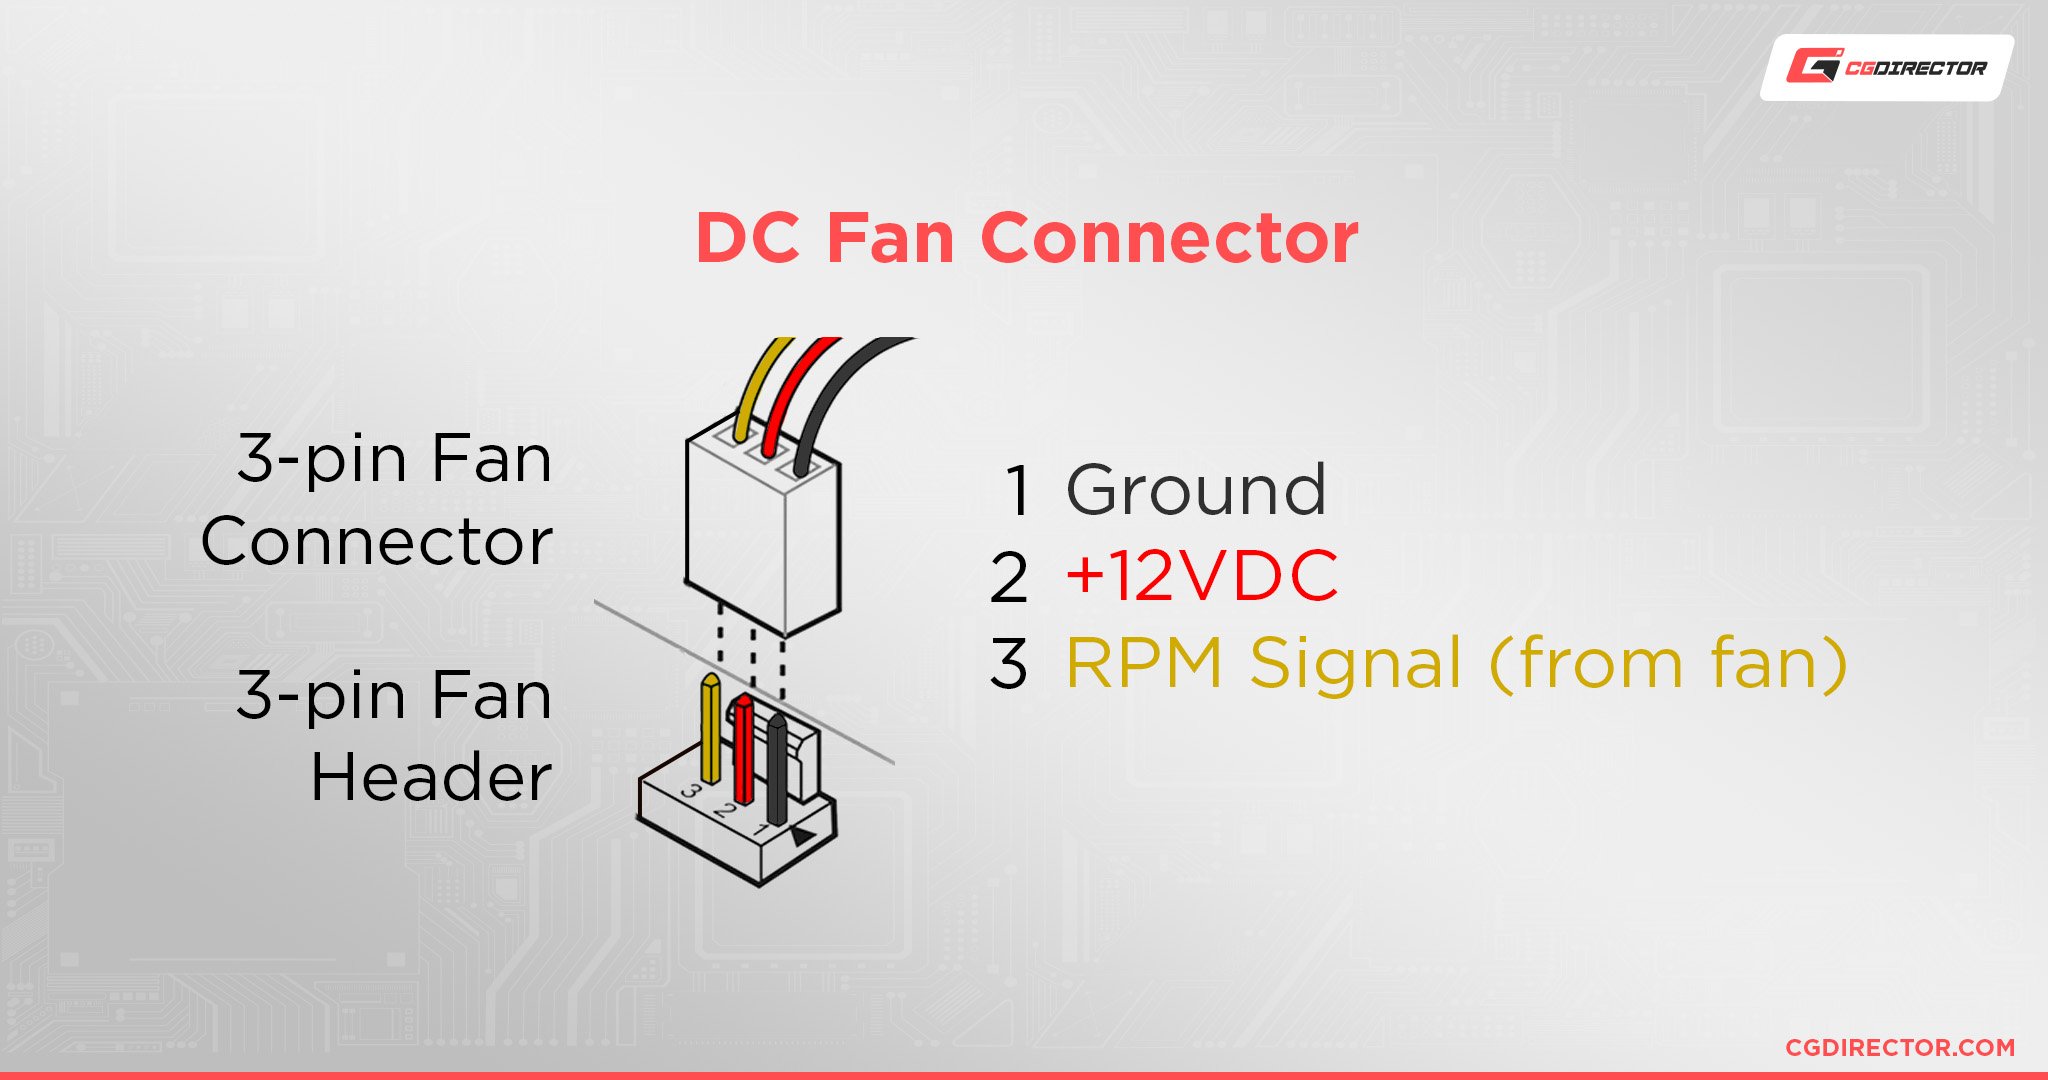 DC Fan Connector